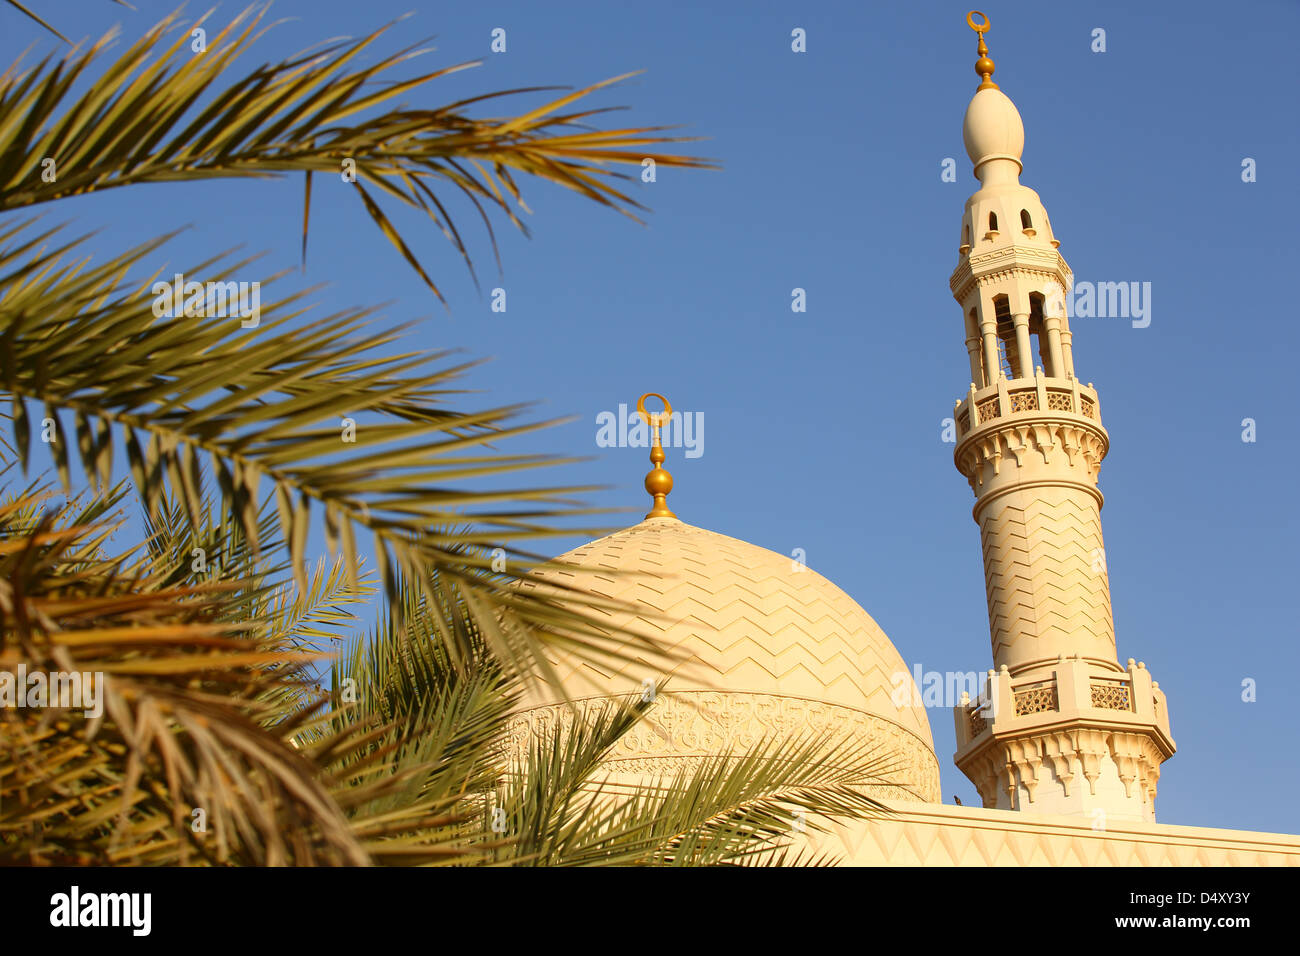 Mosque in Dubai, United Arab Emirates Stock Photo